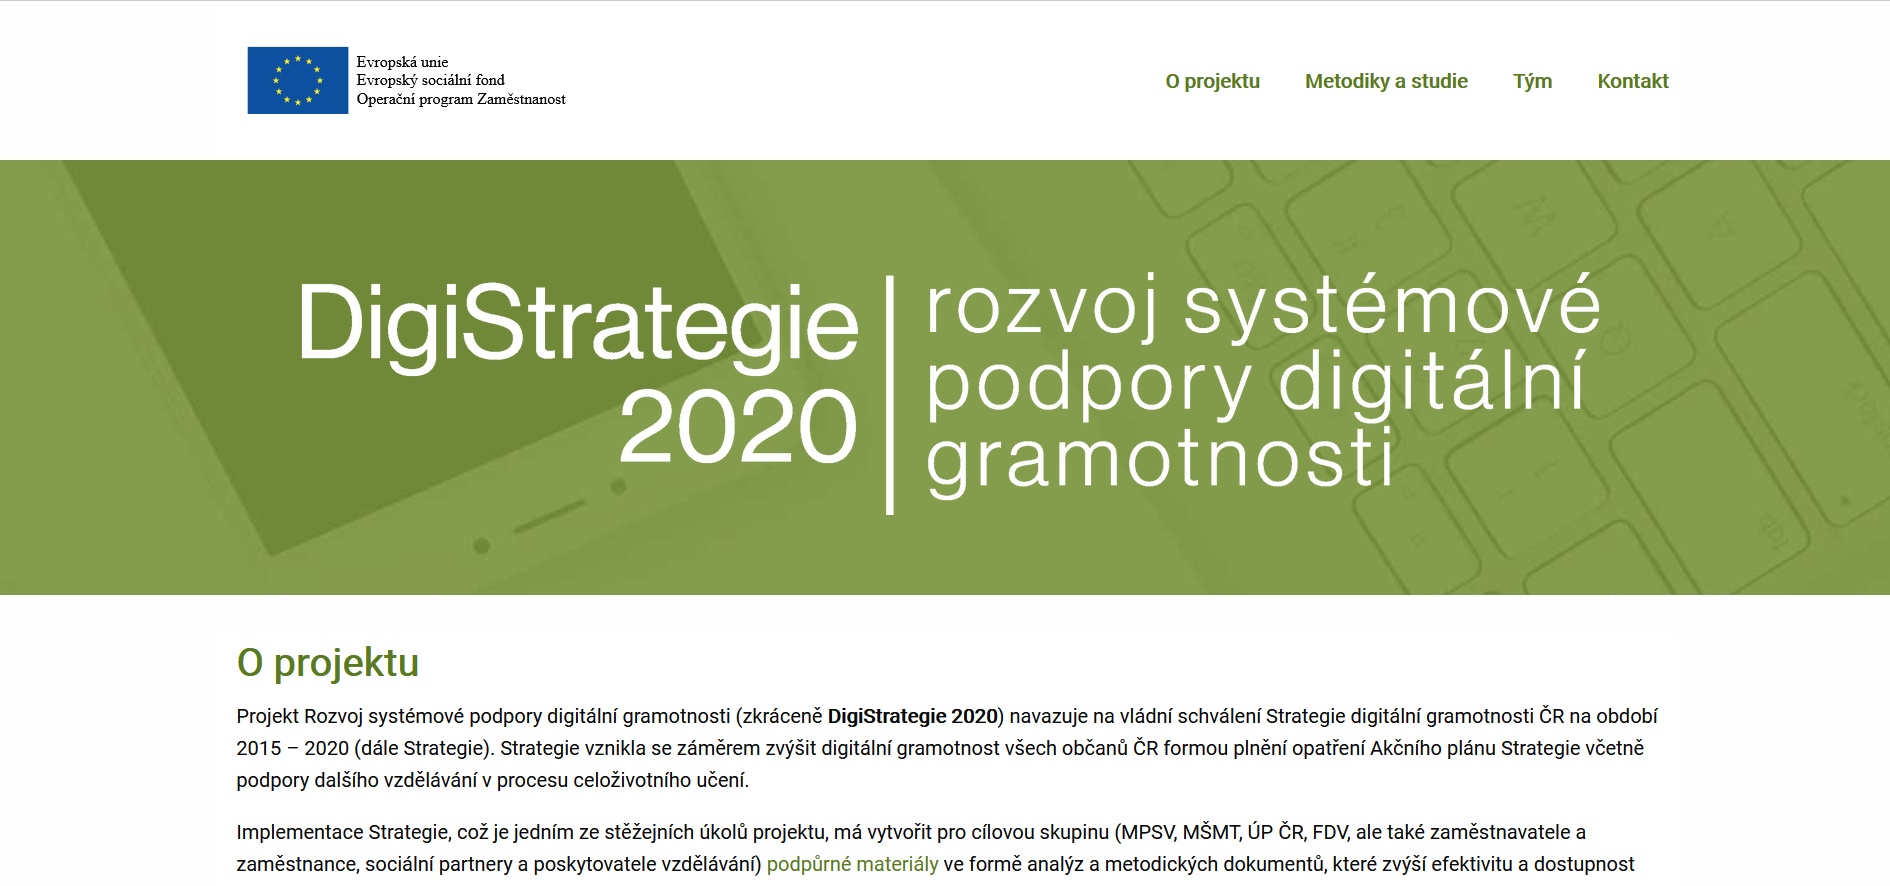 DigiStrategie 2020